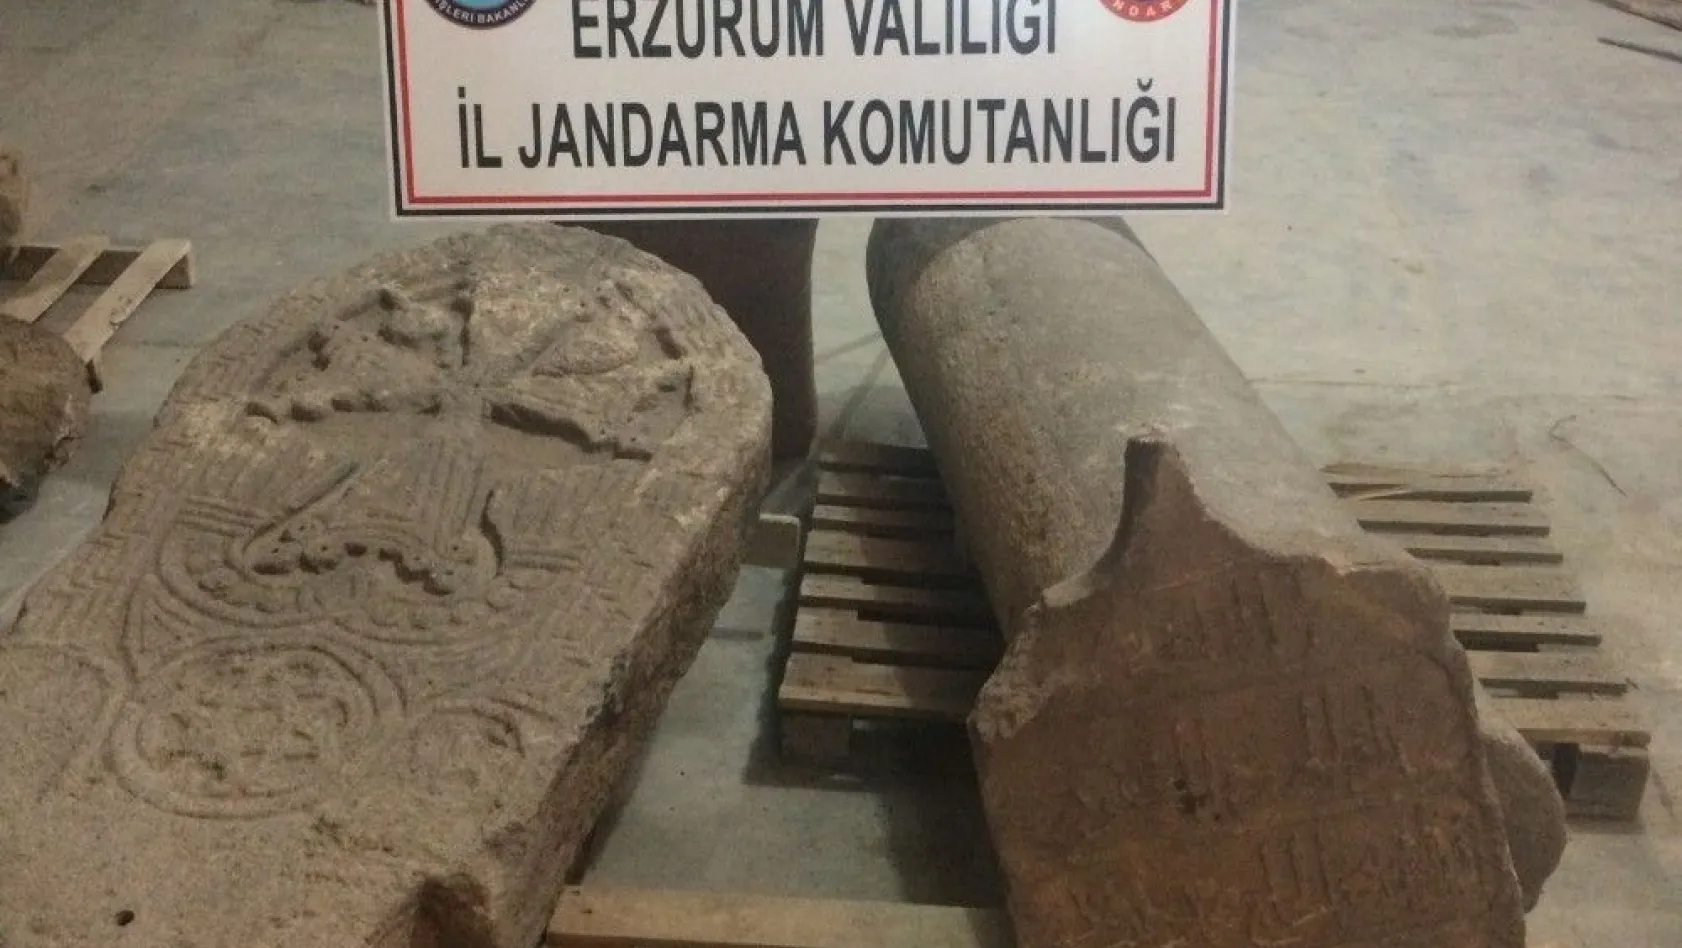 Erzurum'da tarihi eser kaçakçılığı
